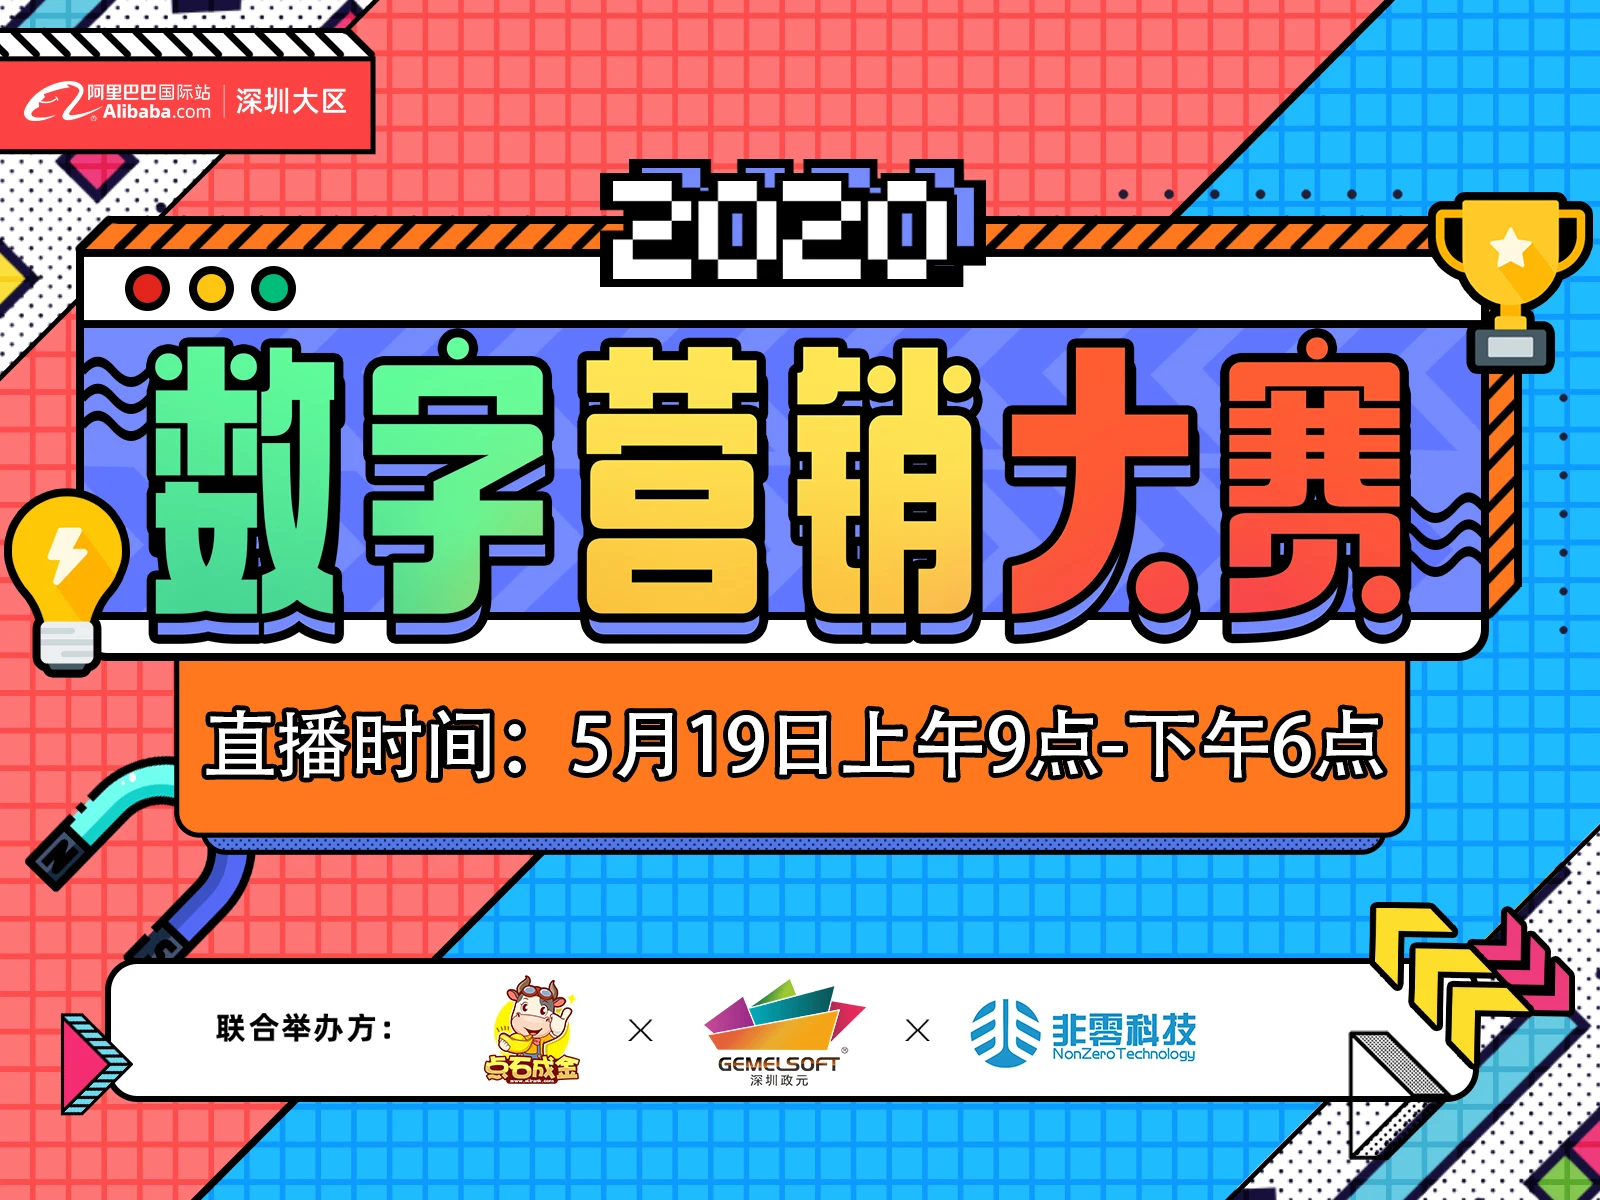 【2020数字营销大赛】深圳大区 深北区域决赛